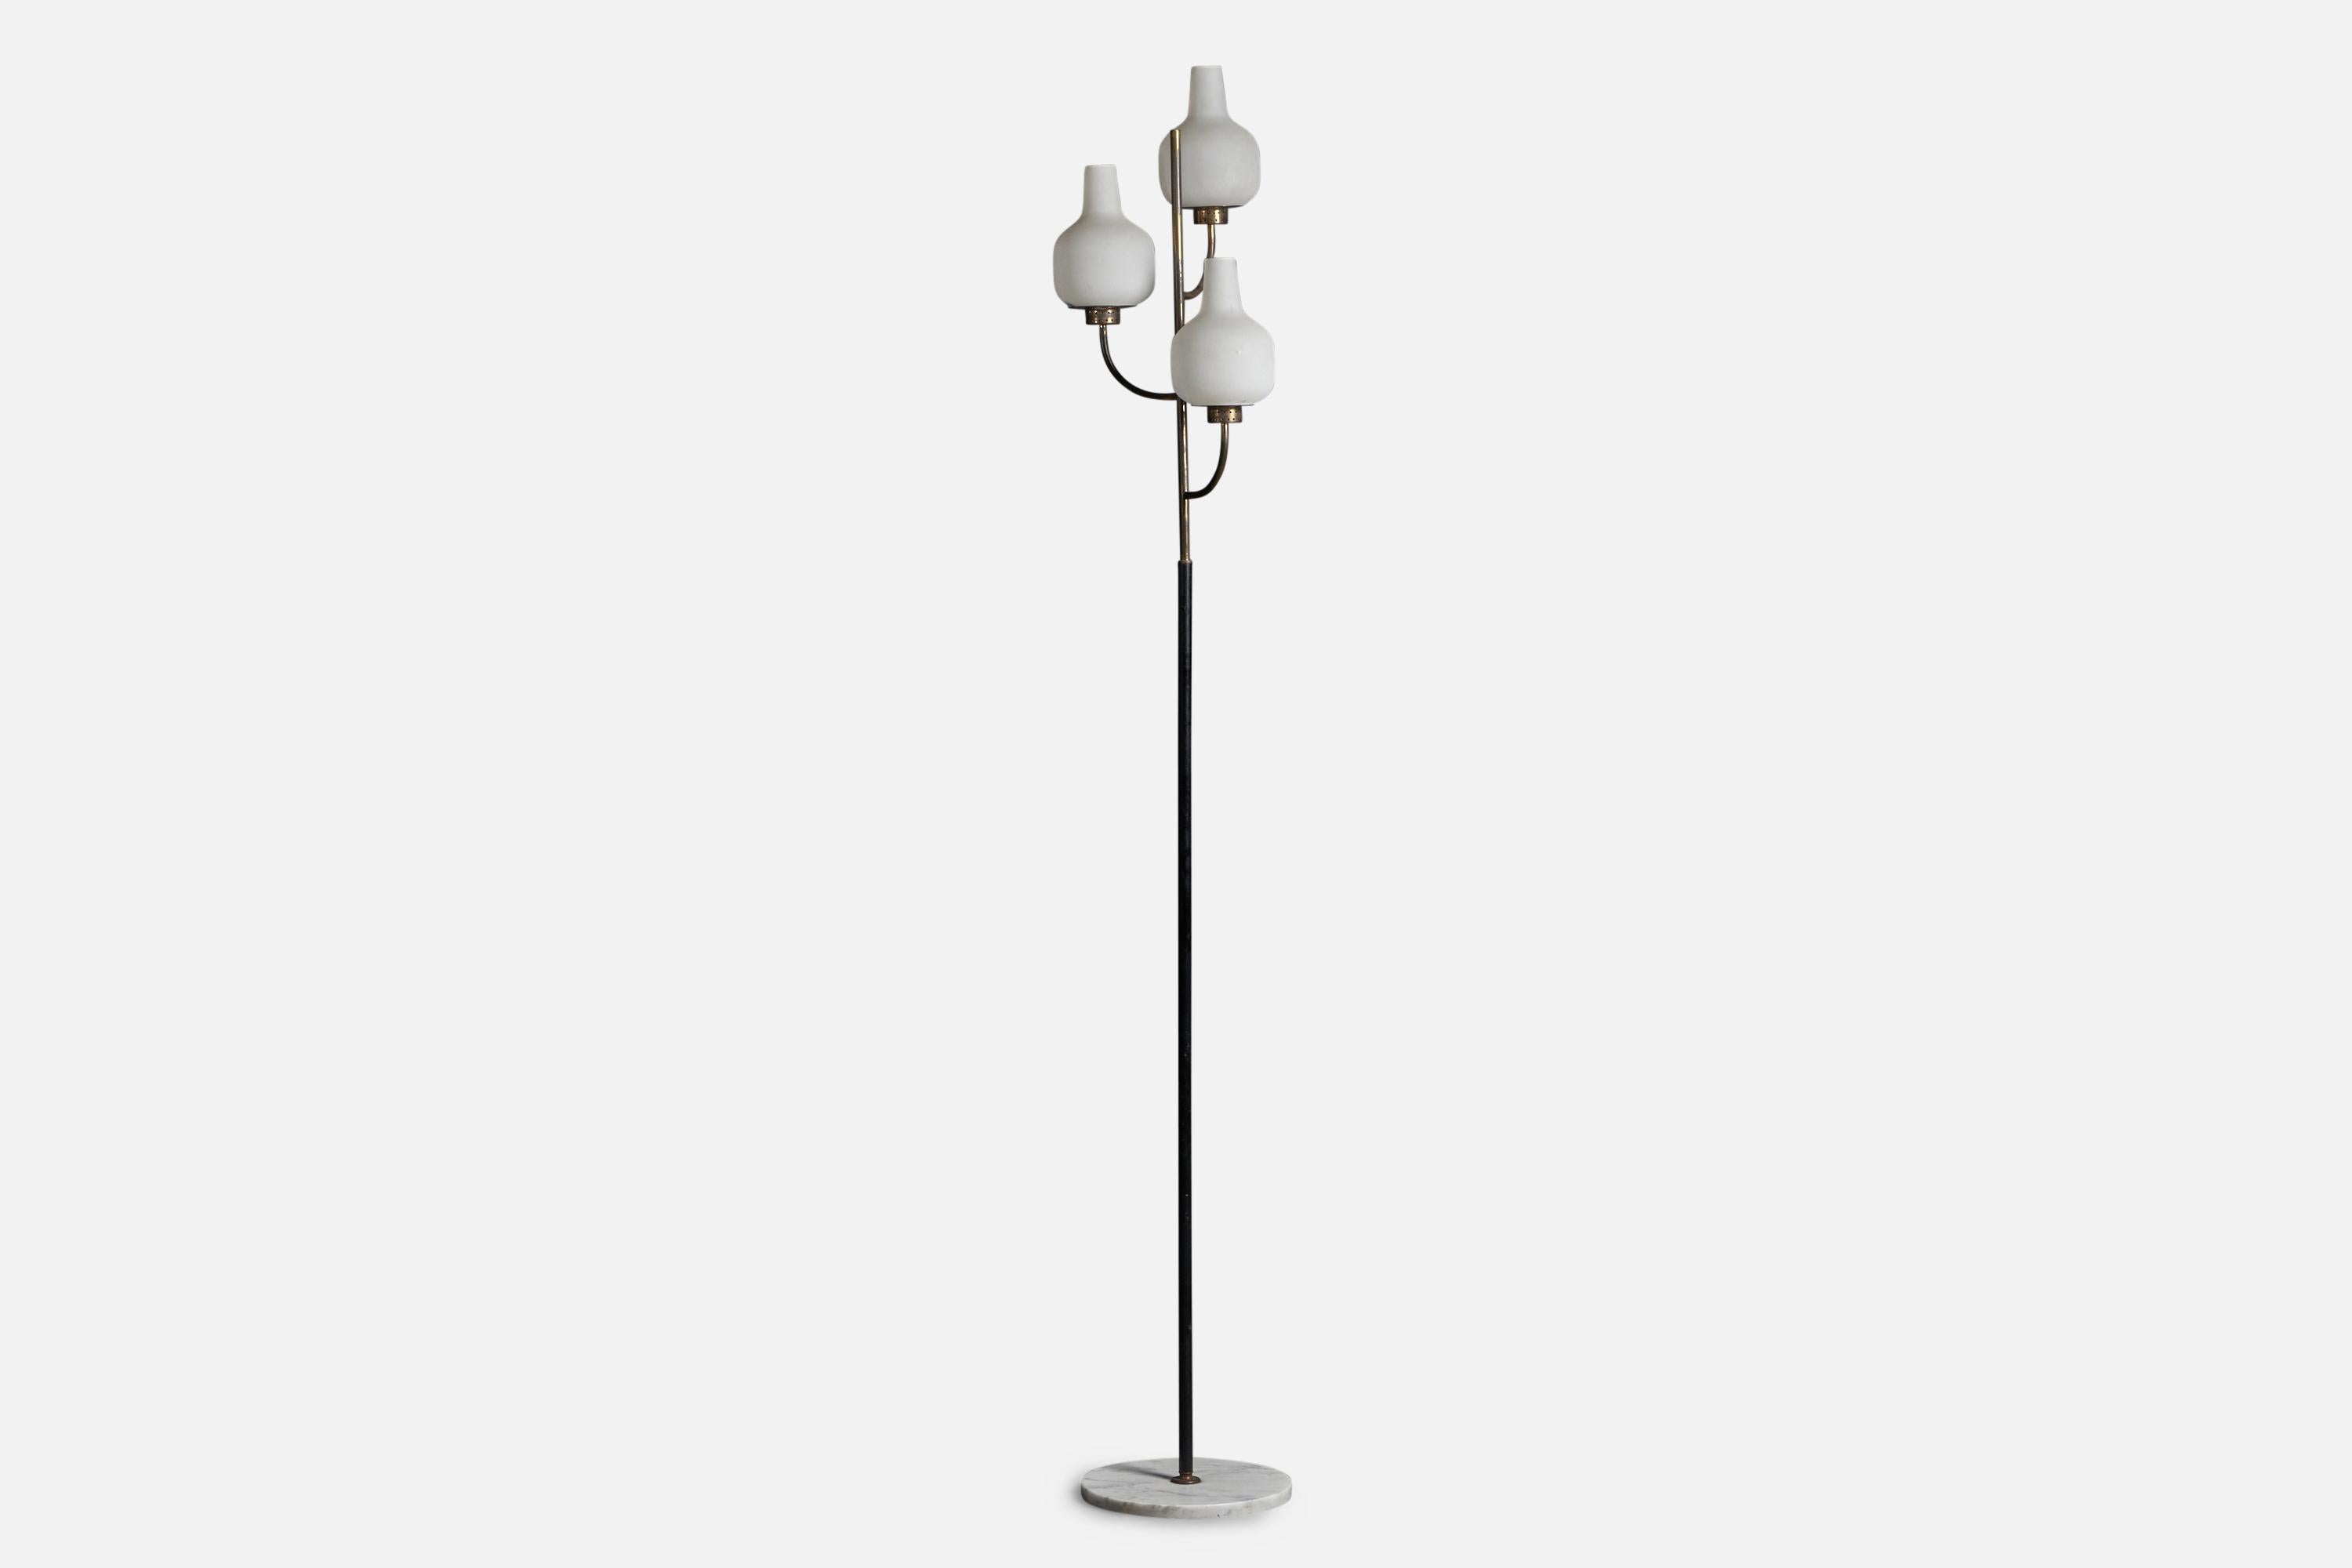 Lampadaire à trois branches en laiton, métal laqué noir, verre et laiton, conçu et produit par Stilnovo, Italie, années 1950.

Dimensions globales : 72